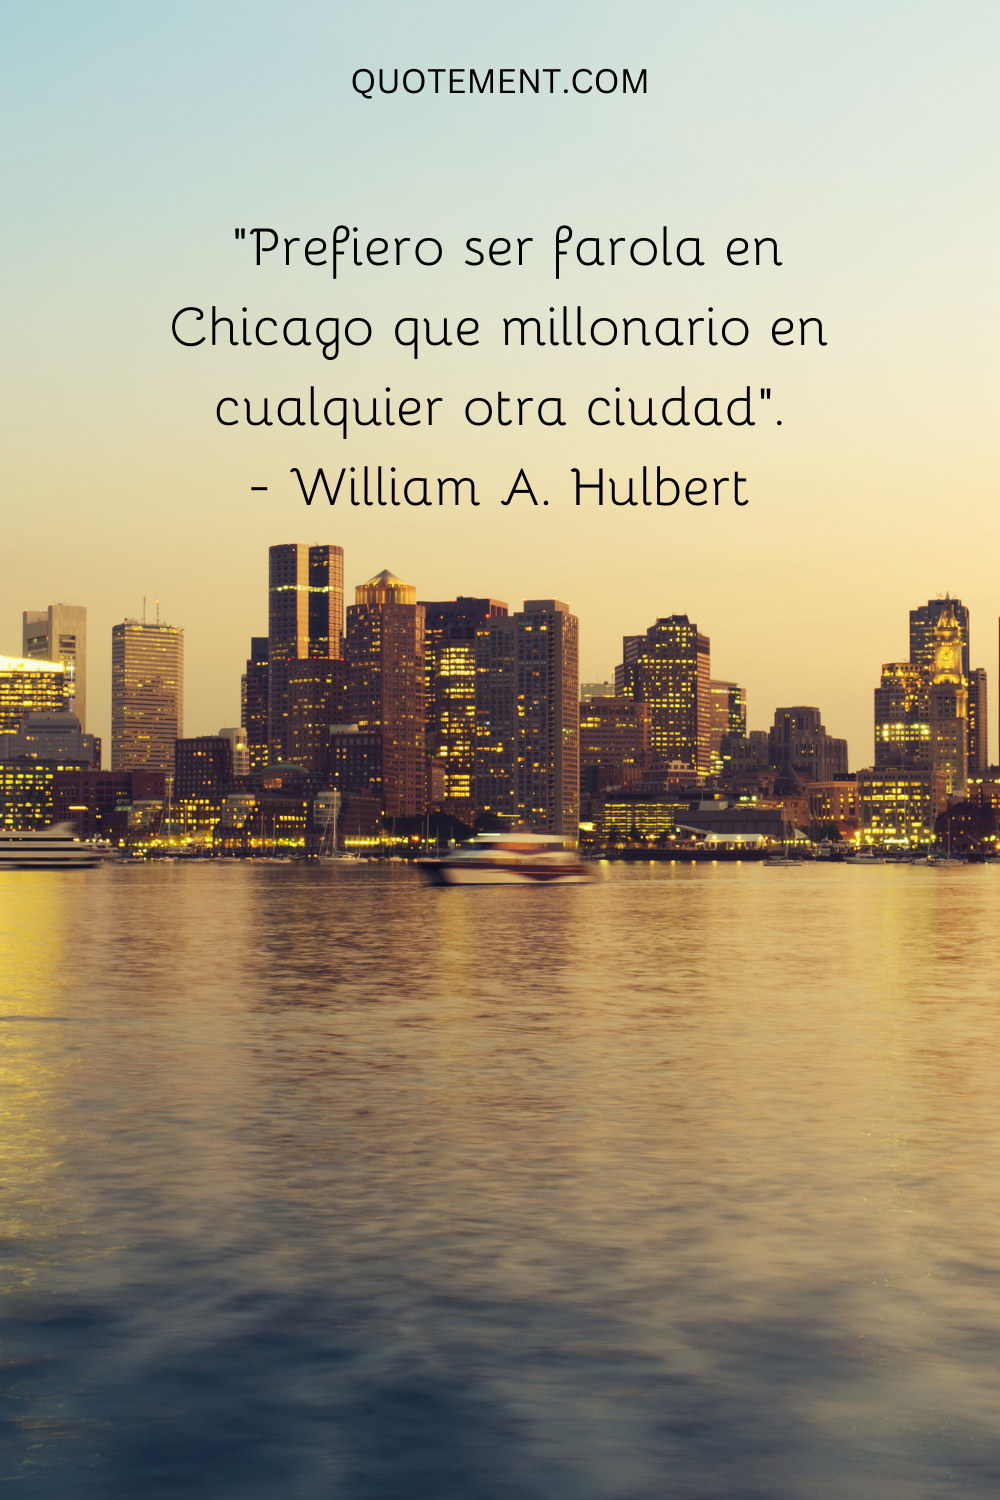 "Prefiero ser farola en Chicago que millonario en cualquier otra ciudad". - William A. Hulbert